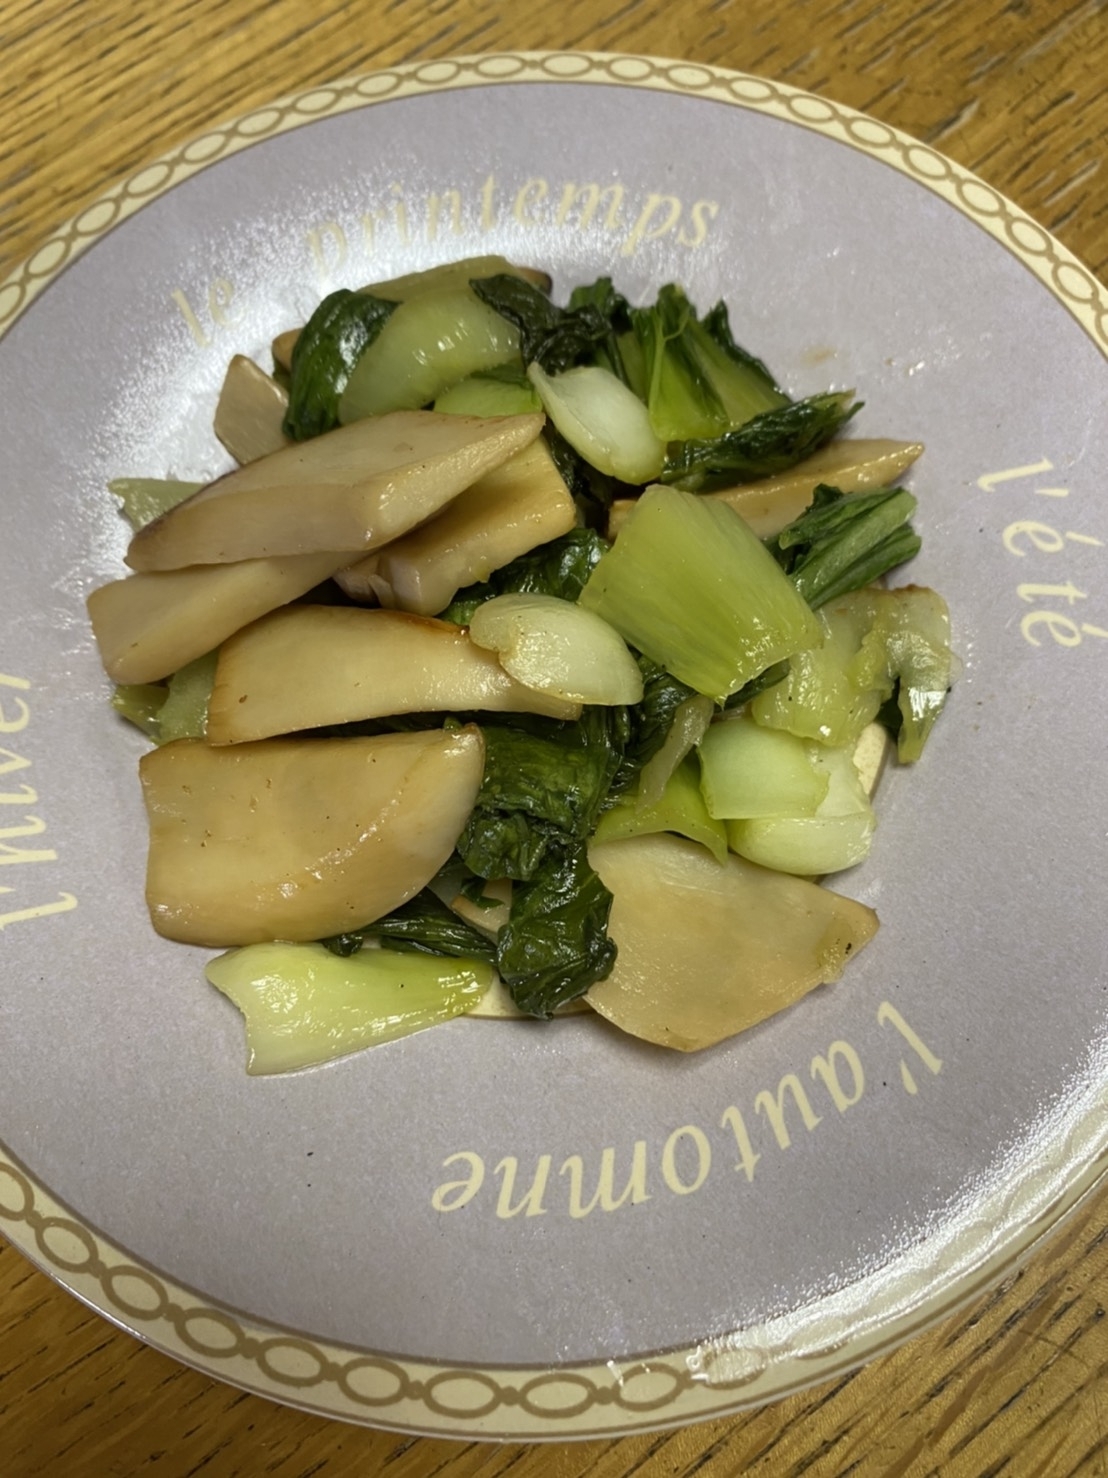 エリンギと青野菜の炒め物